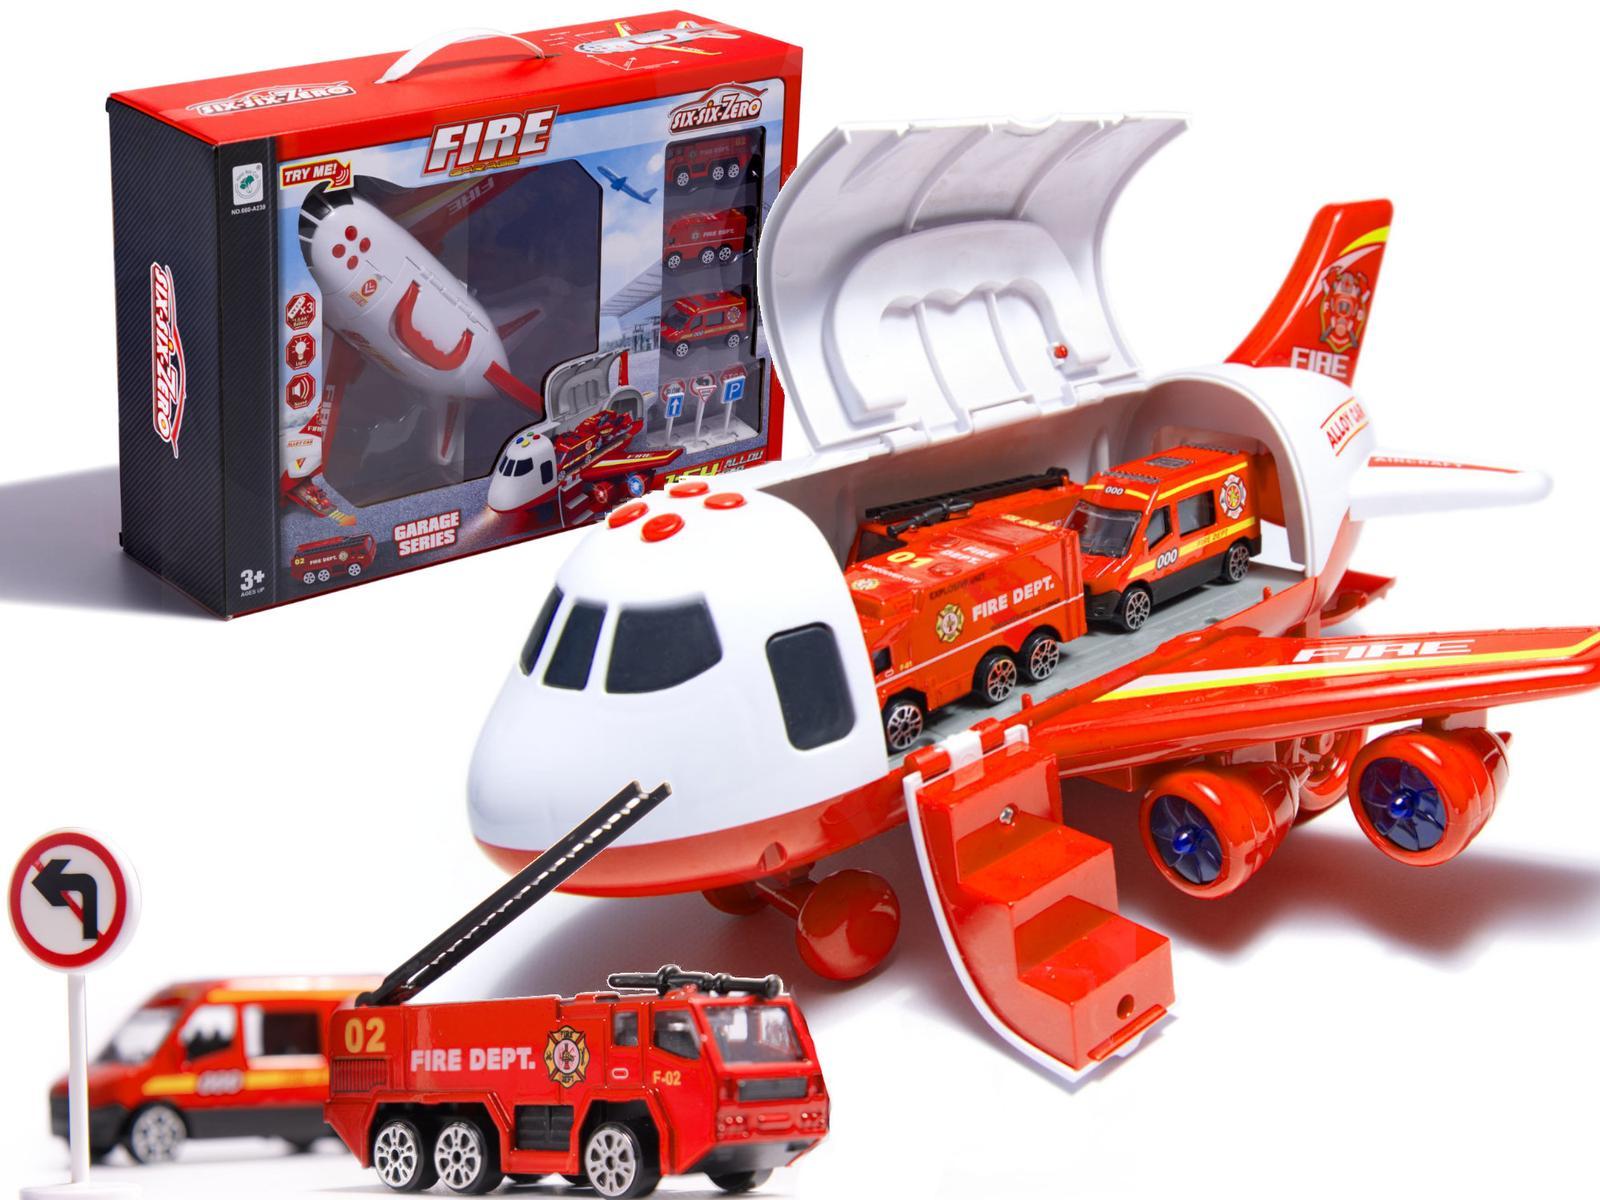 Transporter samolot + 3 pojazdy straż pożarna zabawka dla dzieci czerwona 41,5x31,5x14 cm nr. 1